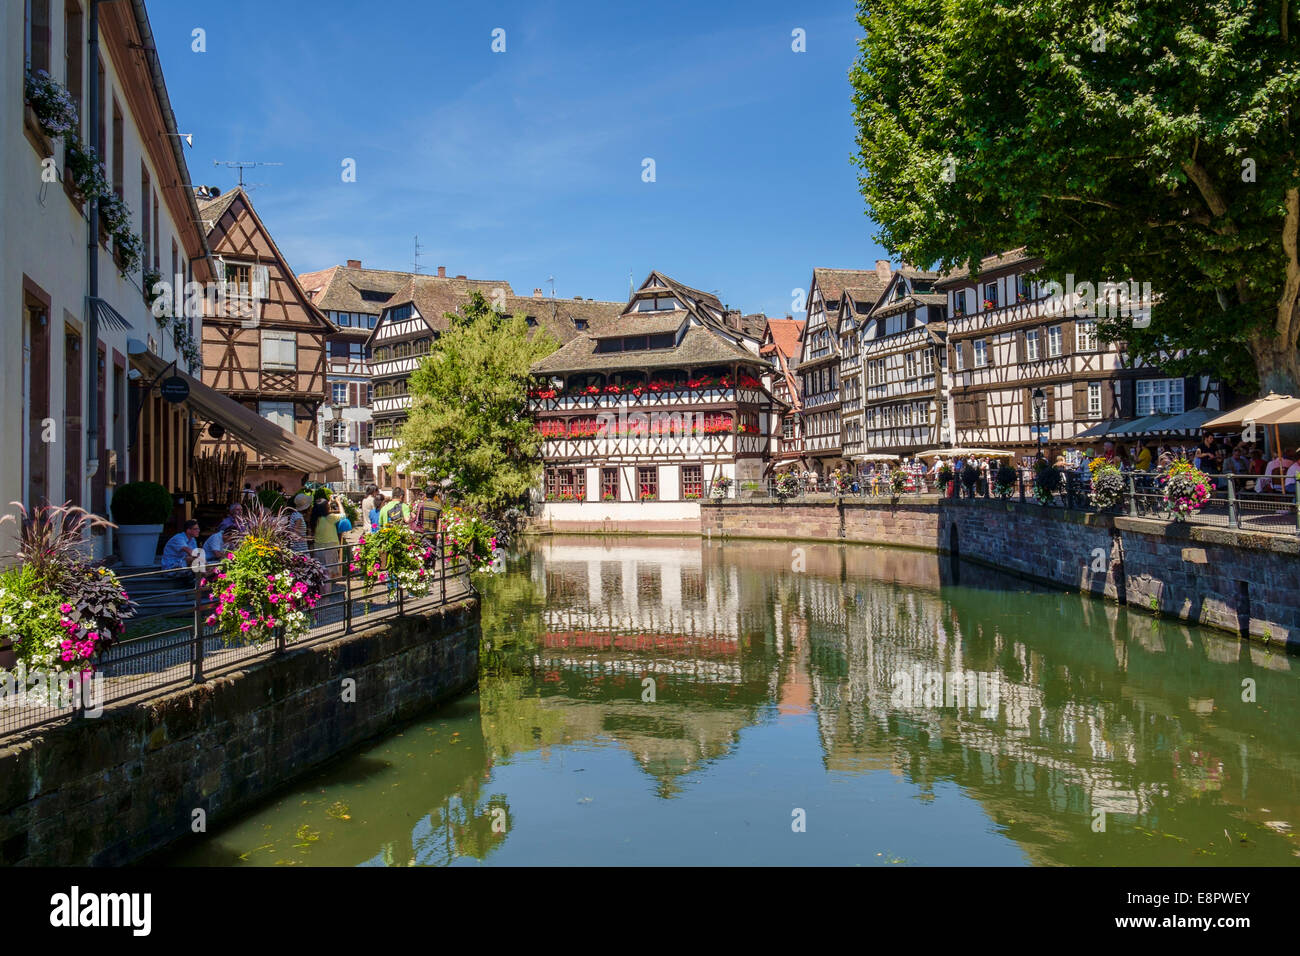 Strasbourg, France, Europe - anciens bâtiments de petite France quartier de la vieille ville sur l'Ill Banque D'Images